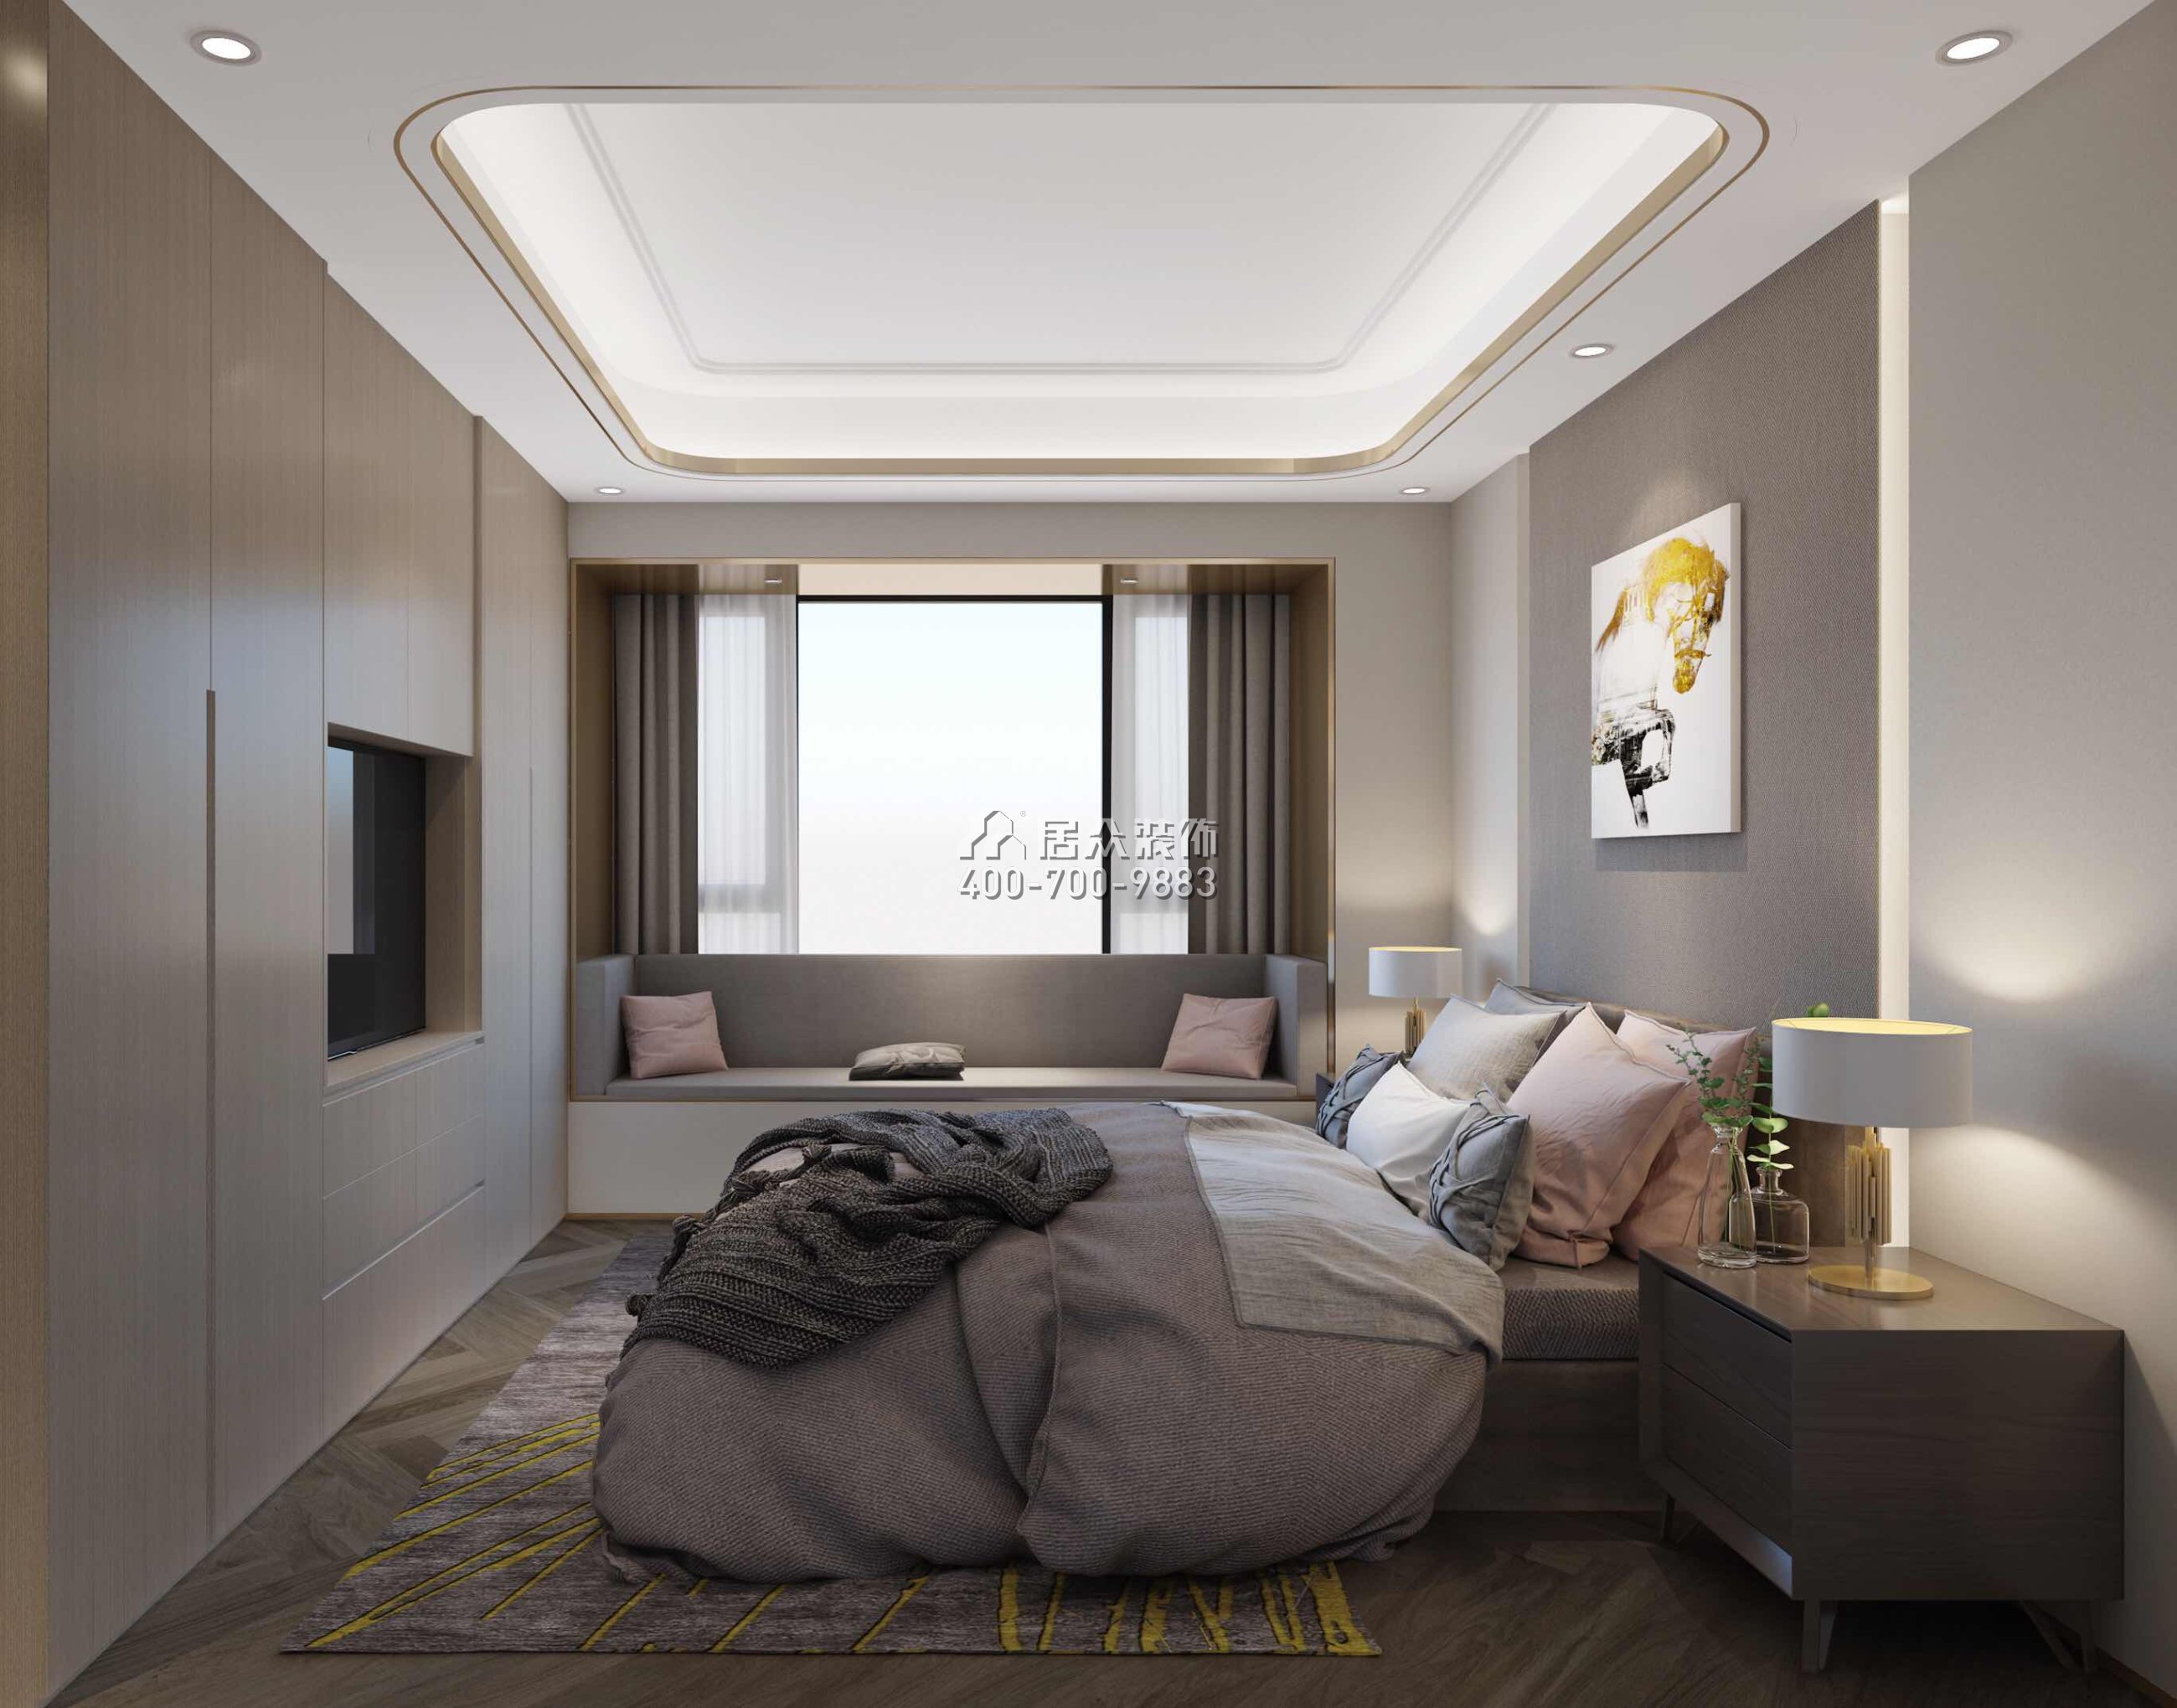 壹方中心170平方米现代简约风格平层户型卧室kok电竞平台效果图